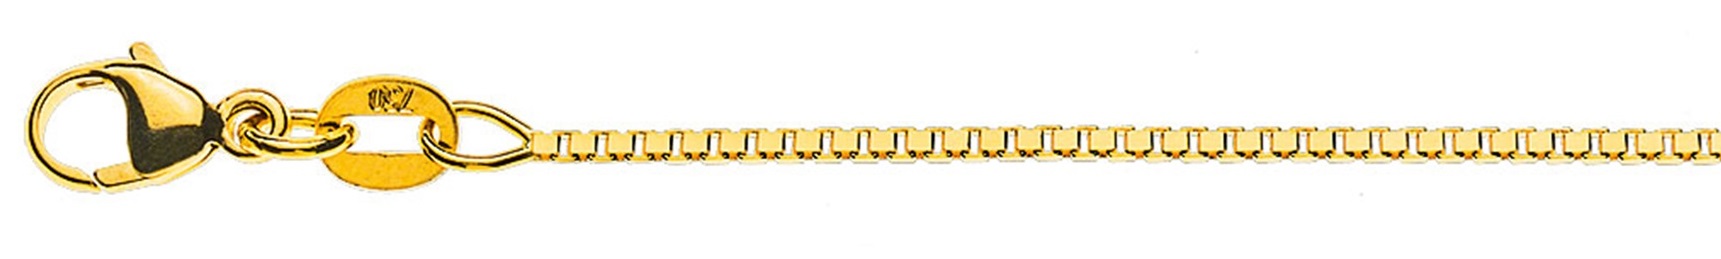 AURONOS Prestige Halskette Gelbgold 18K Venezianerkette diamantiert 55cm 1.1mm